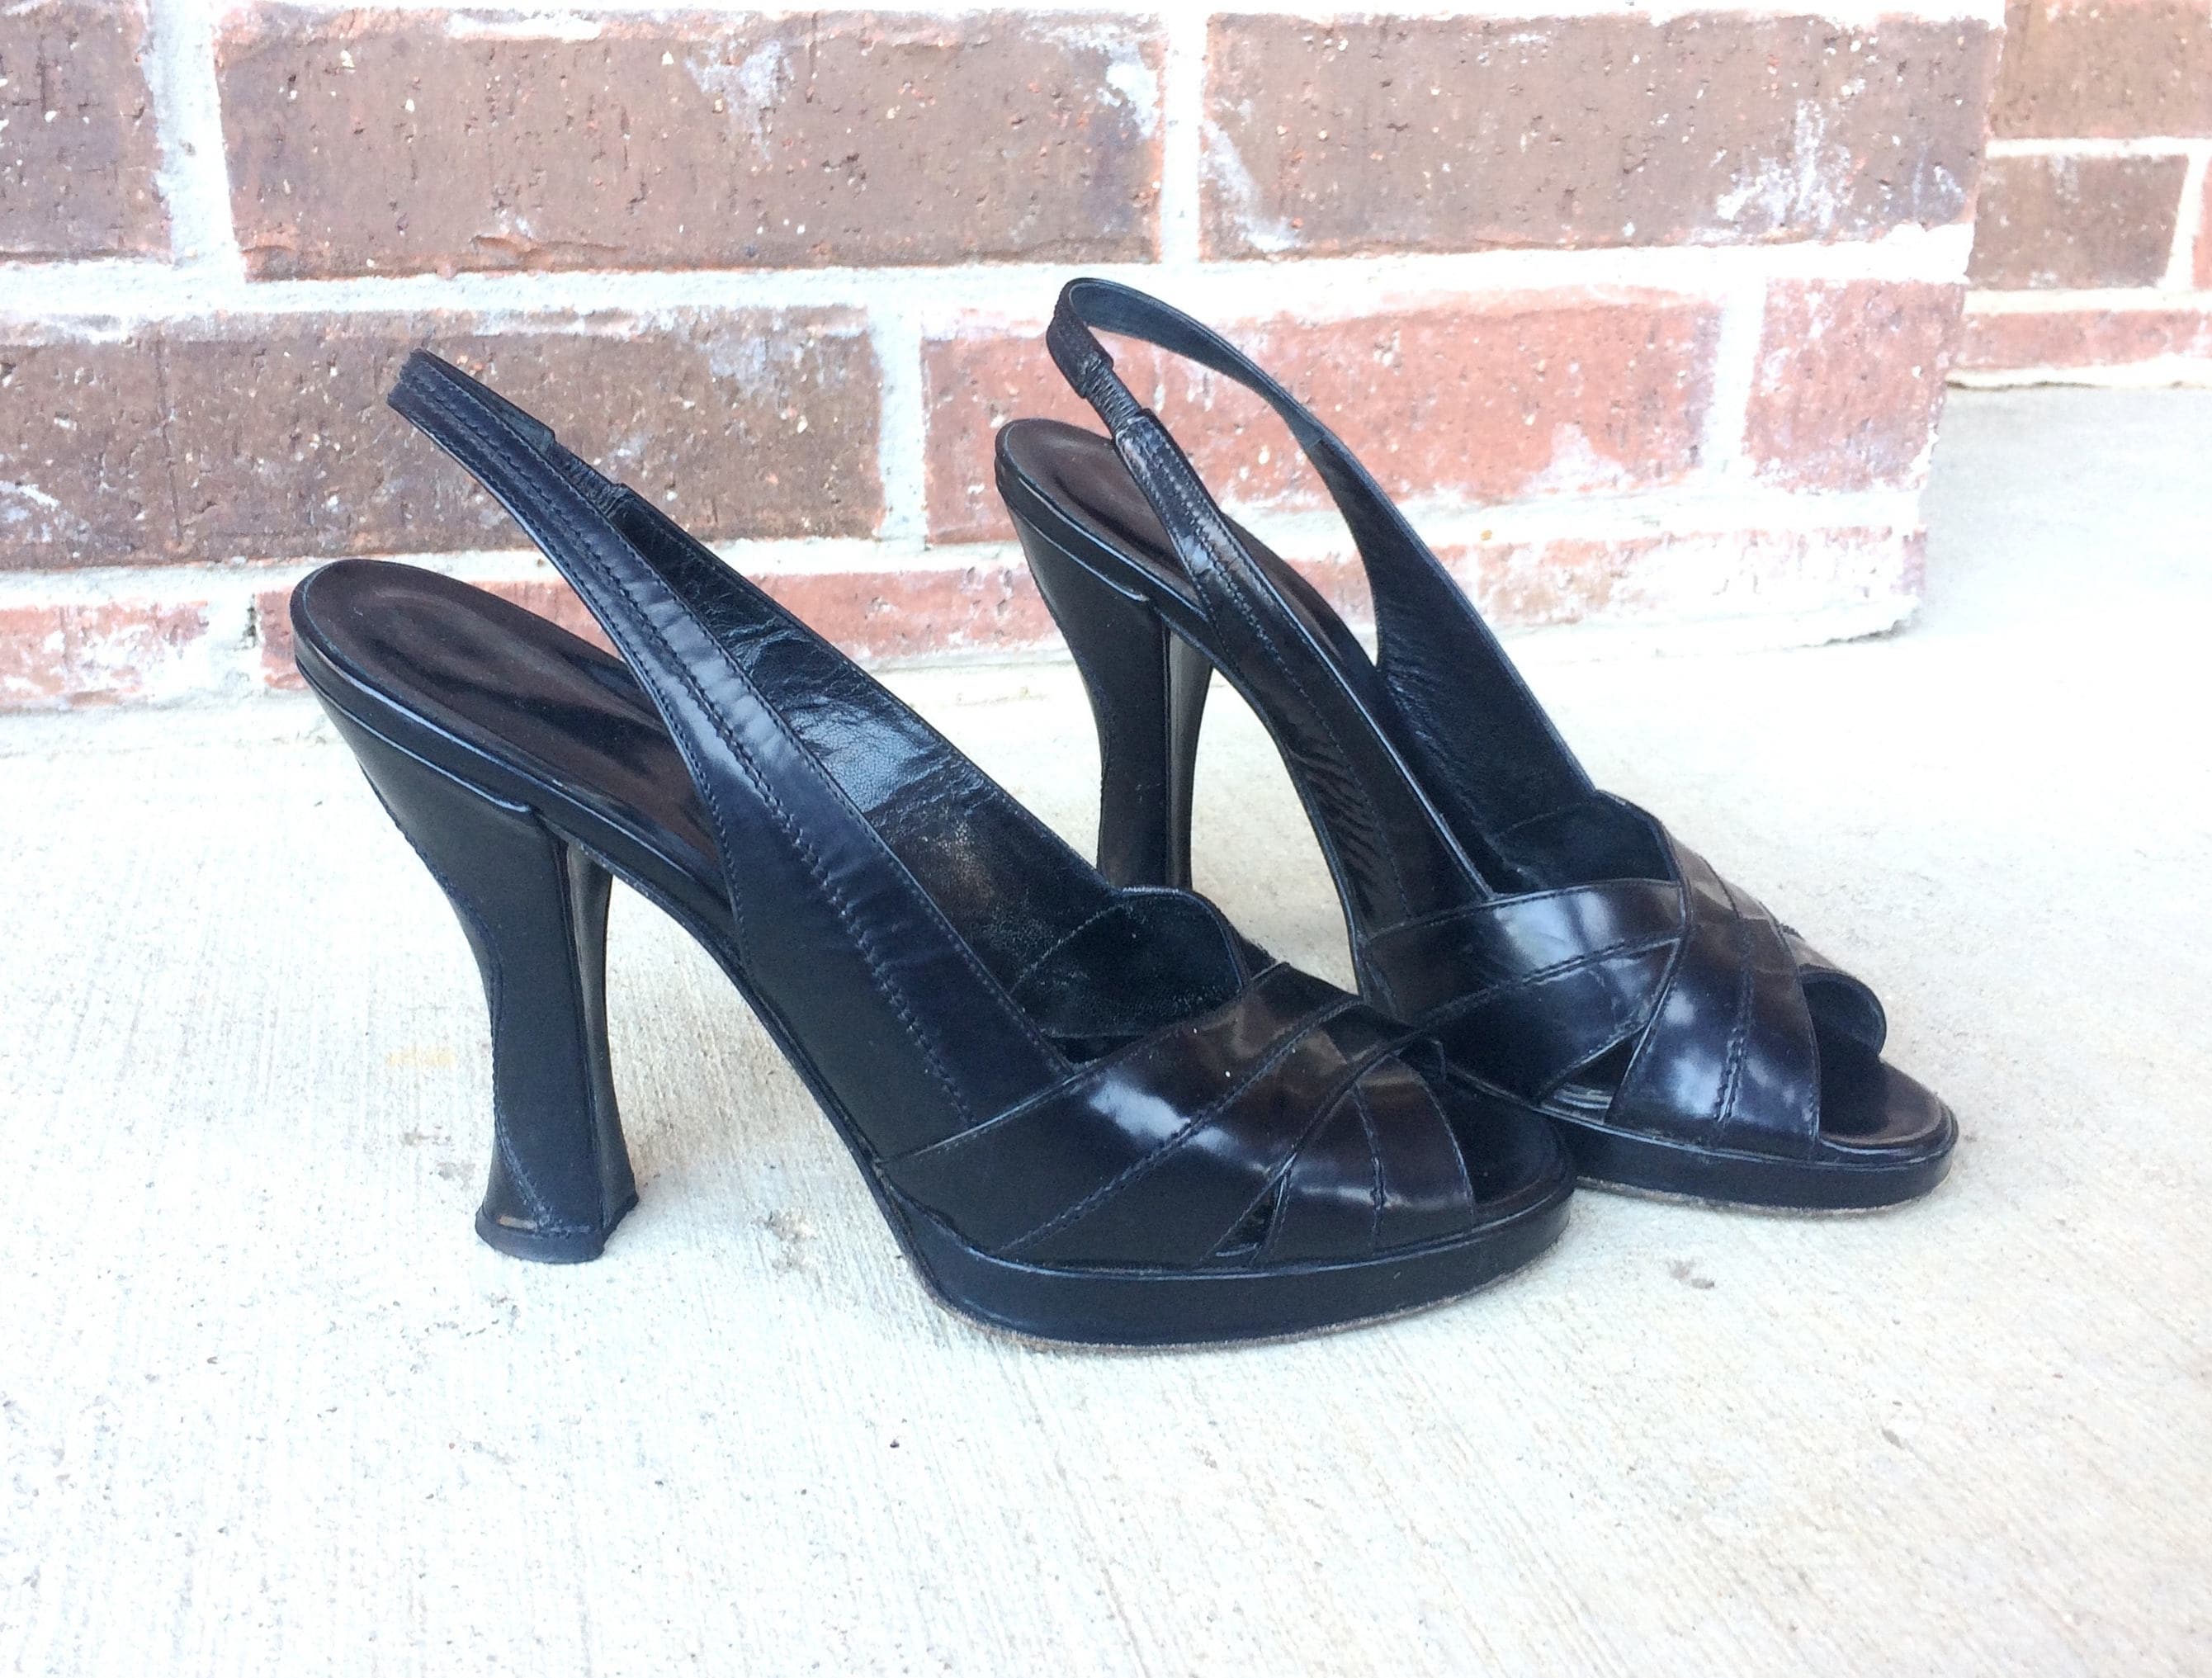 90s Woven Leather Platform Slingback Sandals Vintage 1990s Peep toe Size 8 \u2022 90s does 40s Black Brown Cutout Pumps Heels Shoes